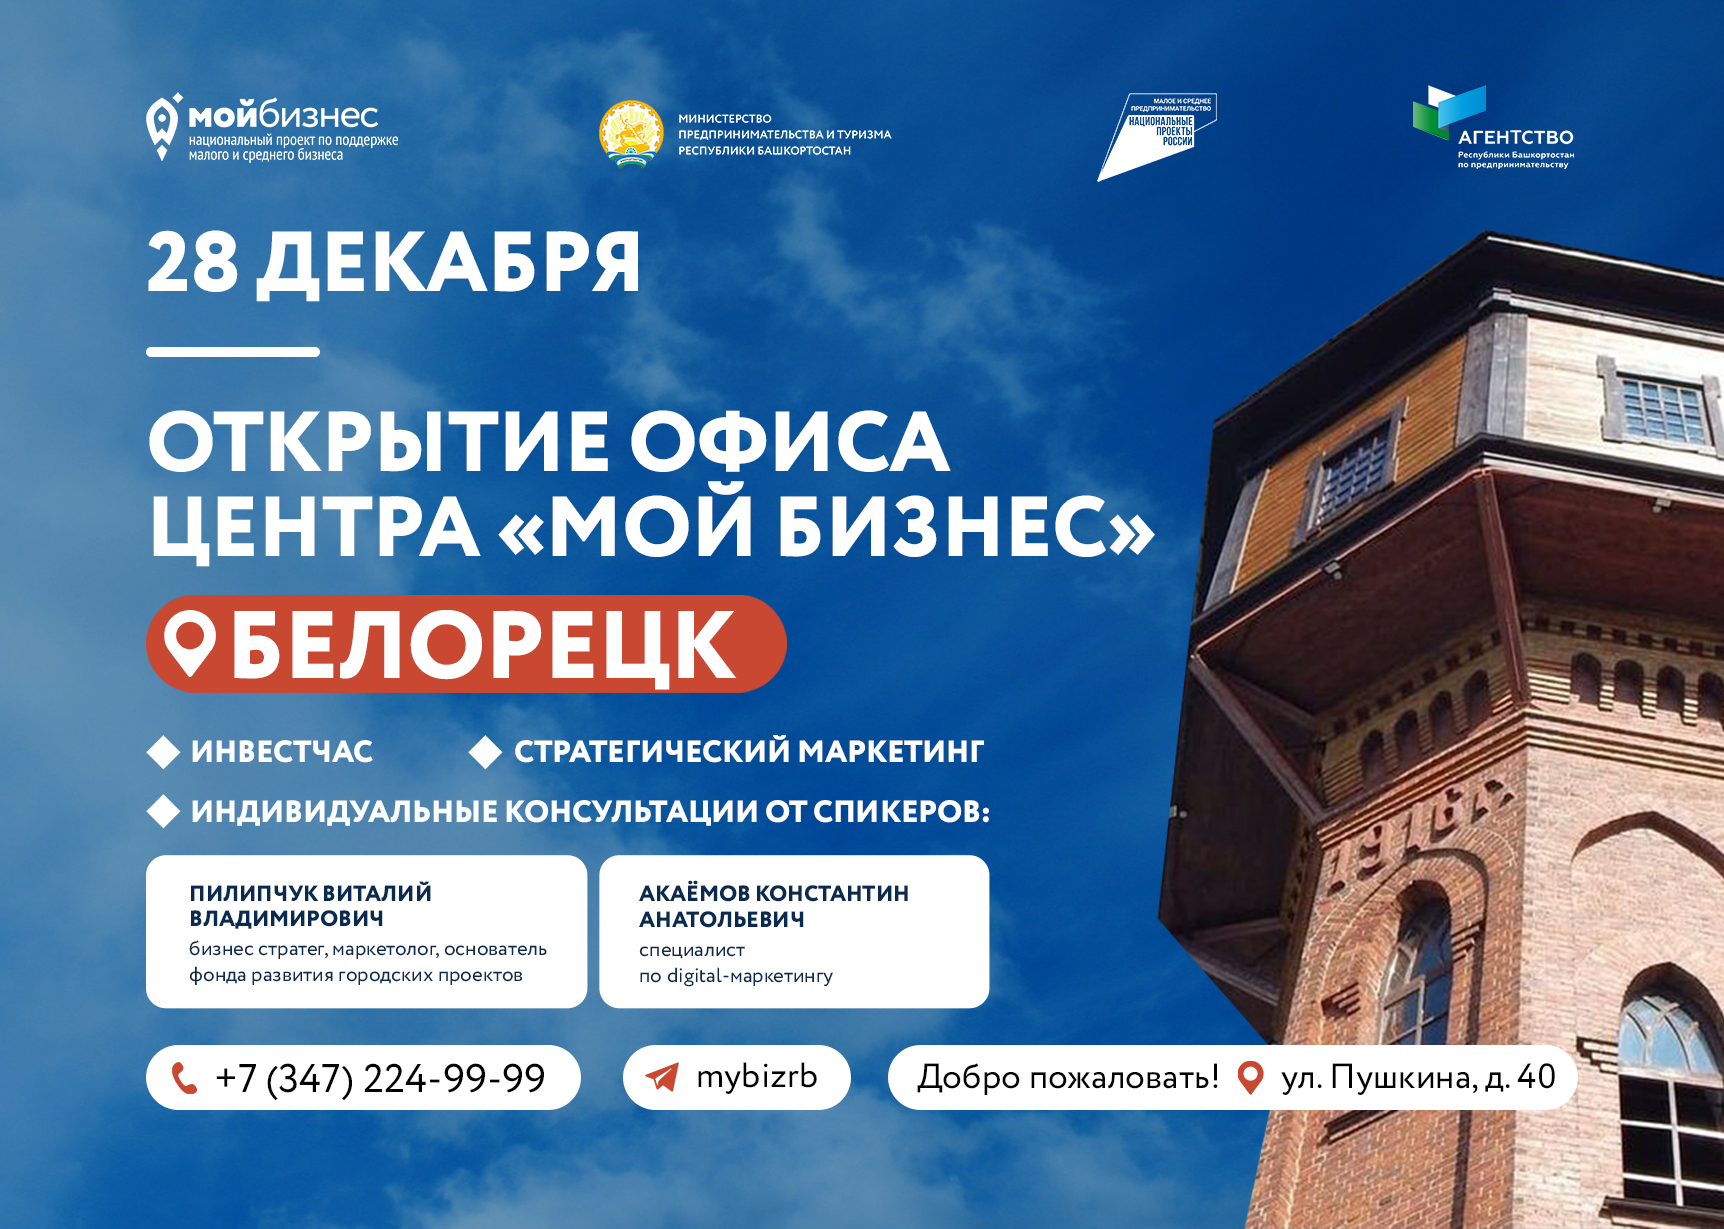 Теперь получить меры государственной поддержки станет еще проще! В городе Белорецк открывается офис Центра «Мой бизнес»